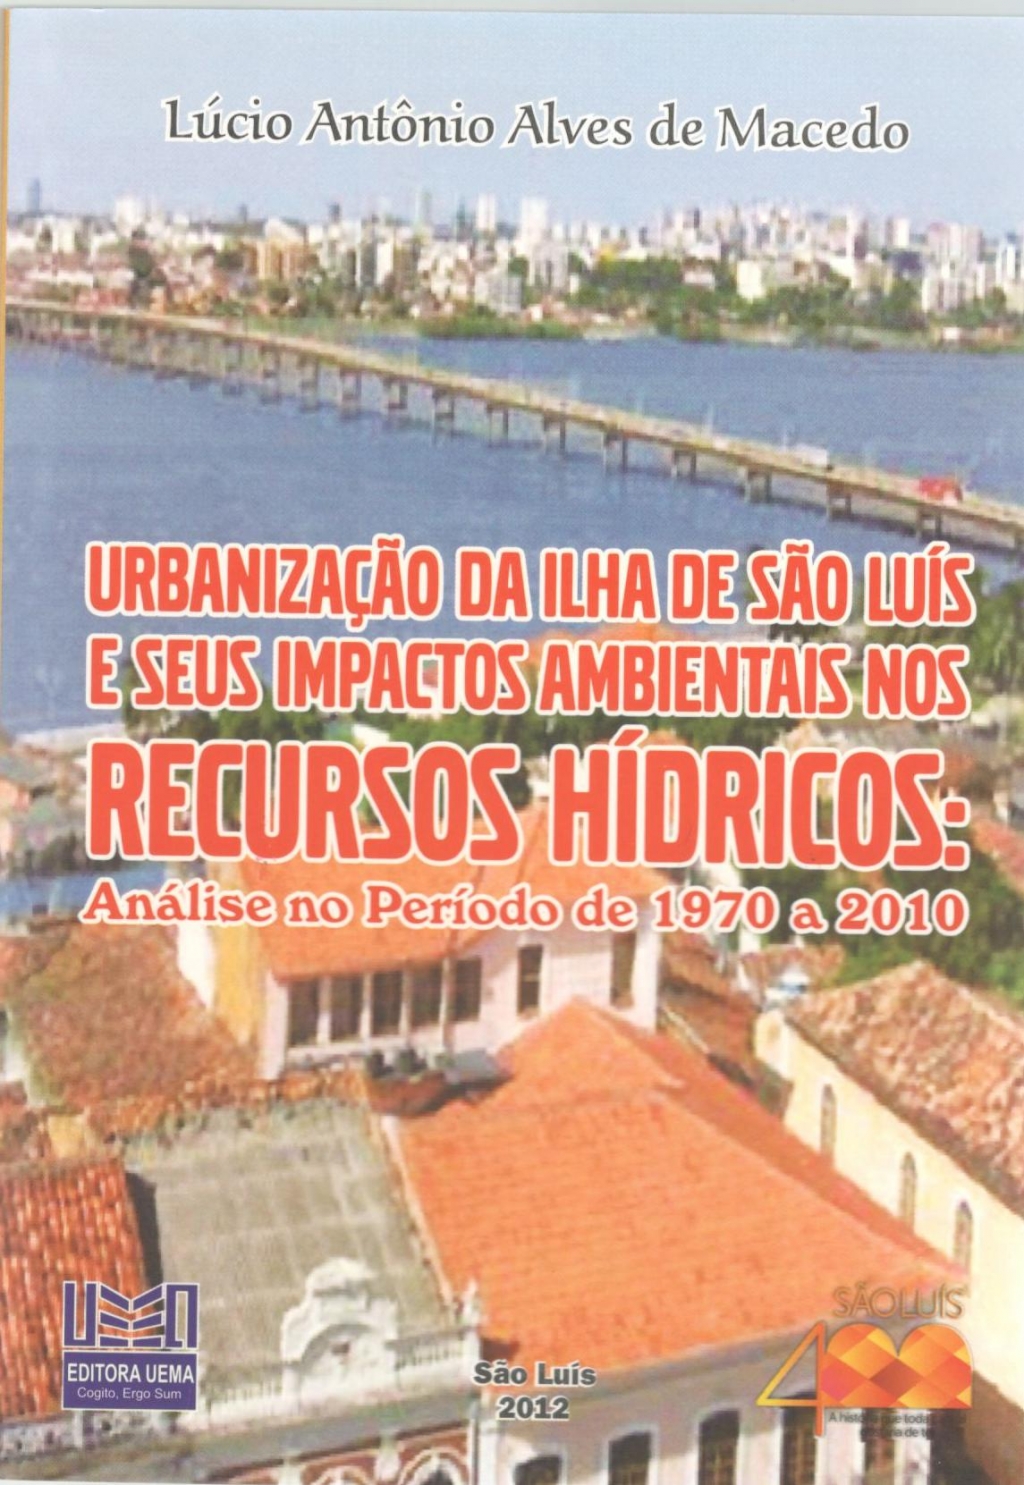 Coleção 400 Anos - Urbanização da ilha de São Luís e seus impactos ambientais nos recursos hídricos: Análise no período de 1970 a 2010 (ESGOTADO)